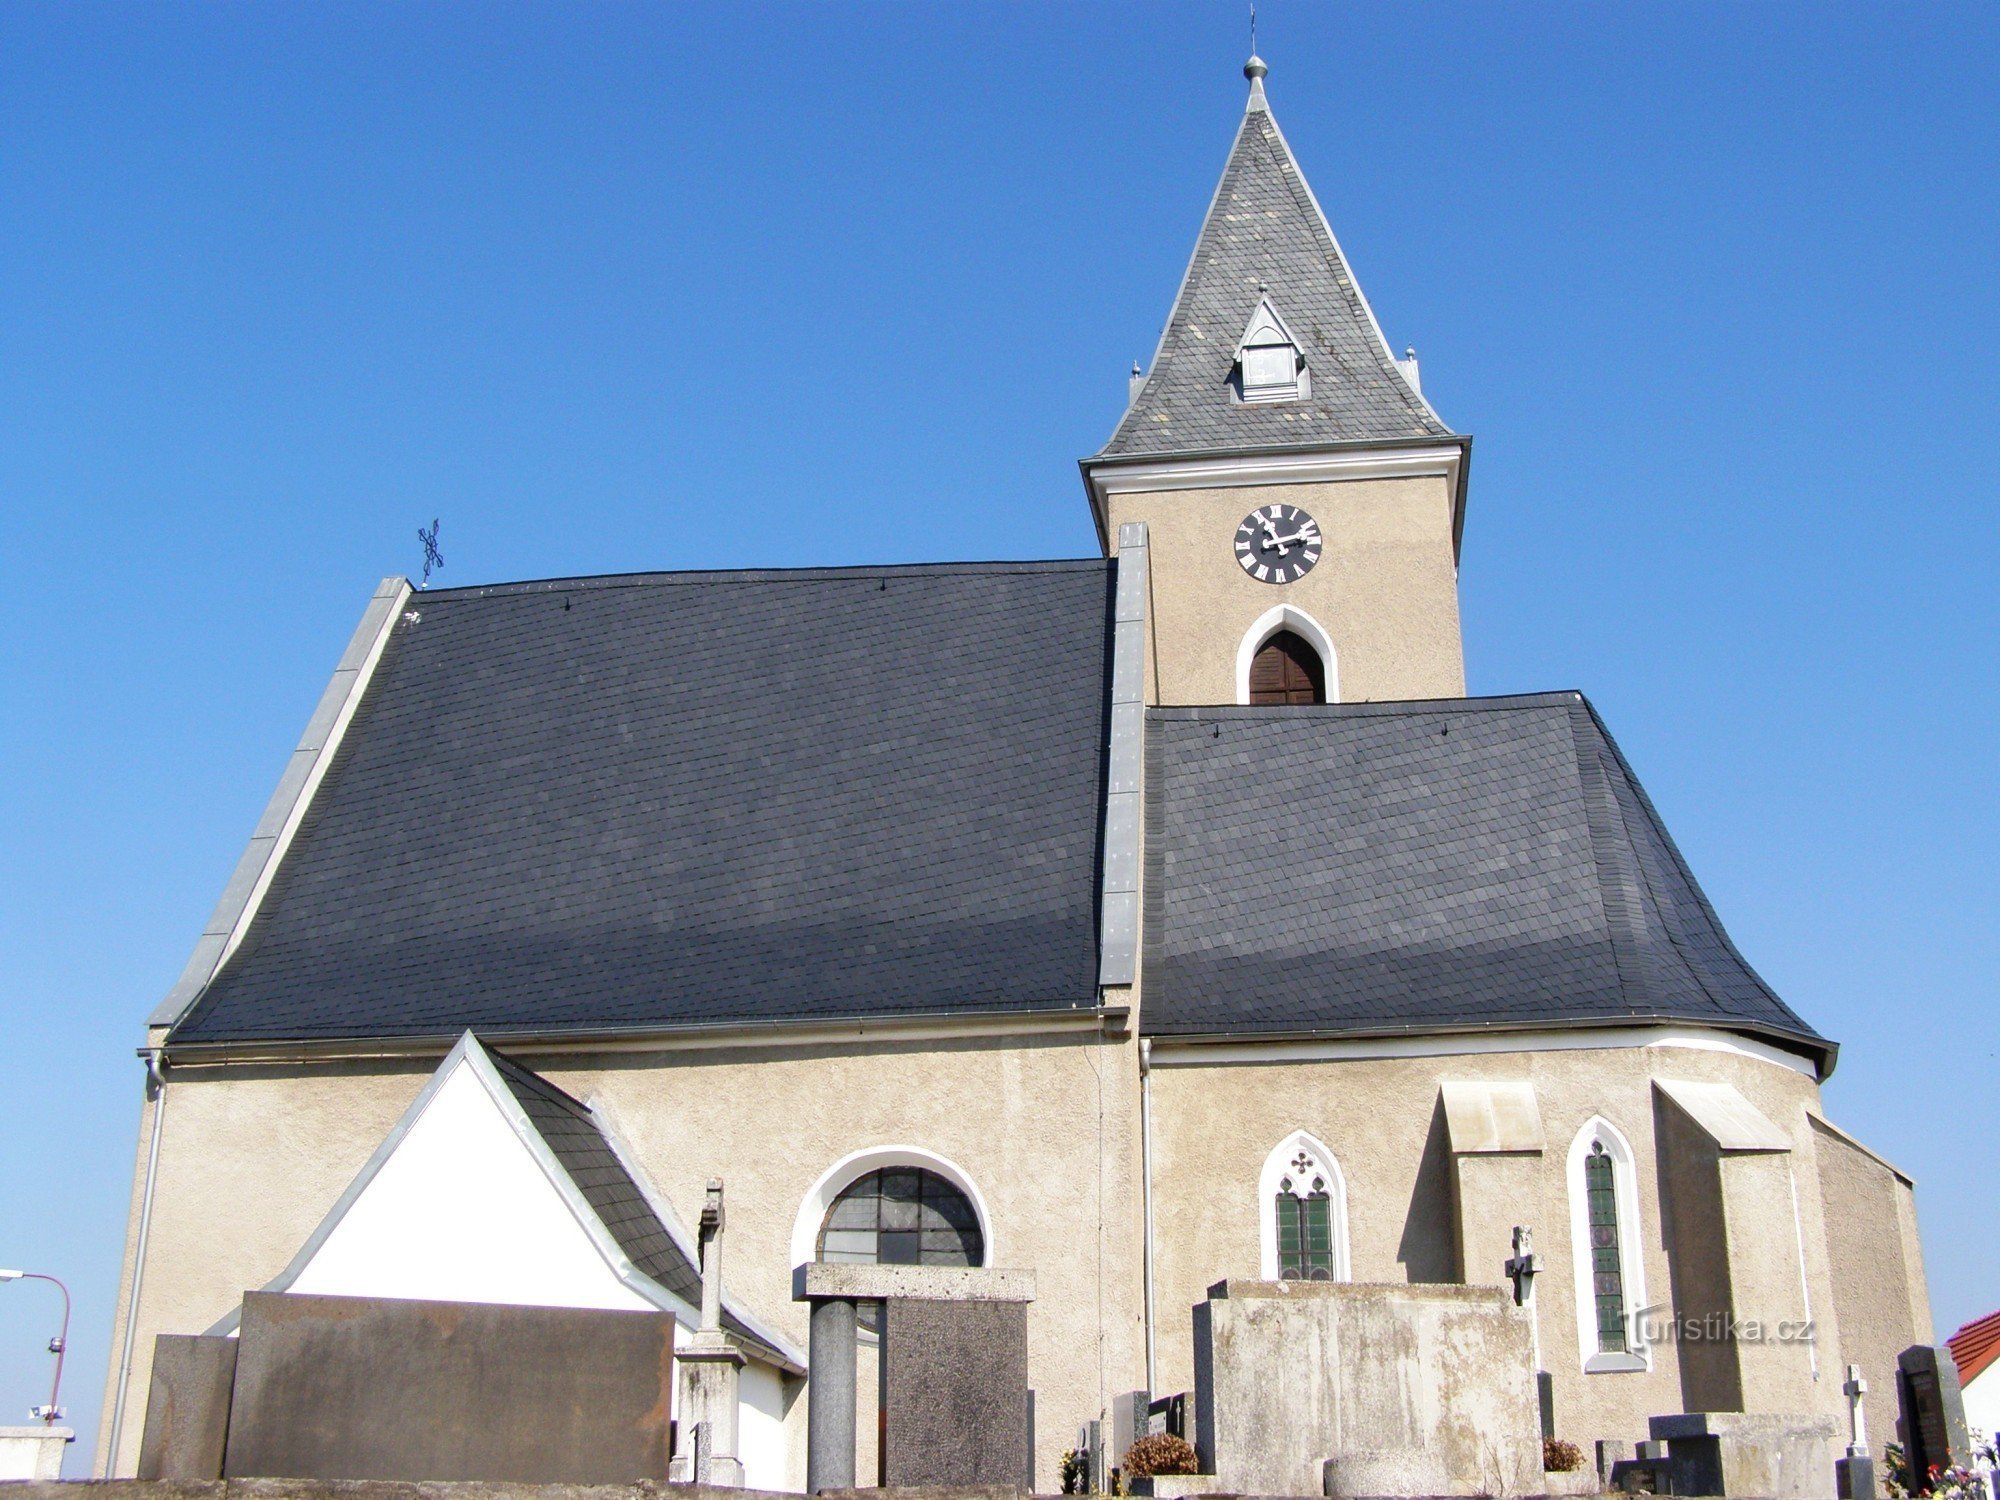 Dríteč - Pyhän Nikolauksen kirkko. Pietari ja Paavali